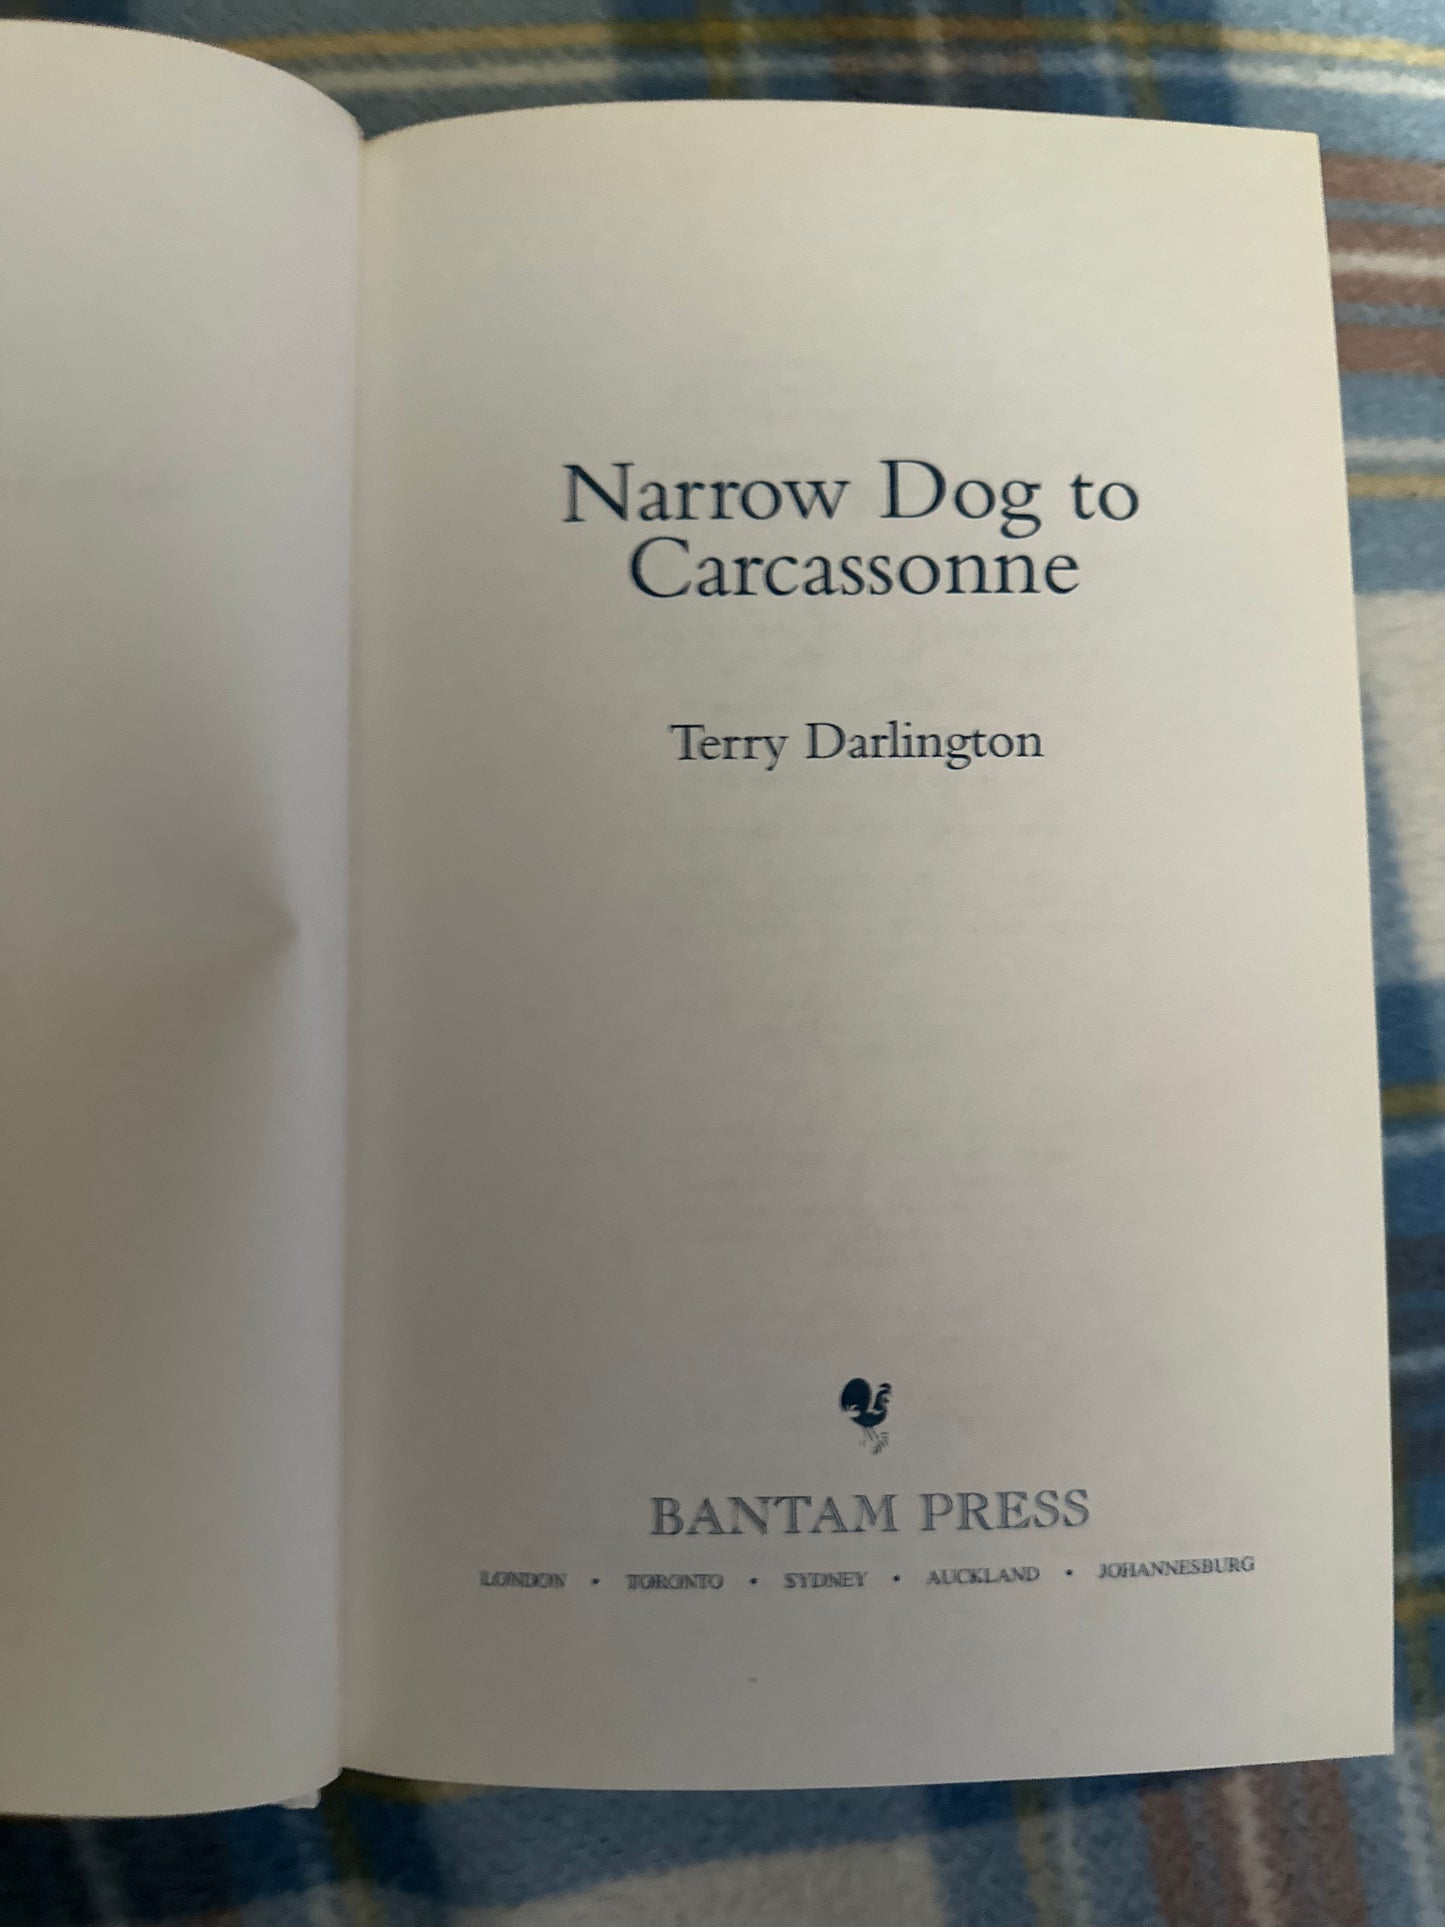 2005 Narrow Dog To Carcassone - Terry Darlington (Bantam Press)